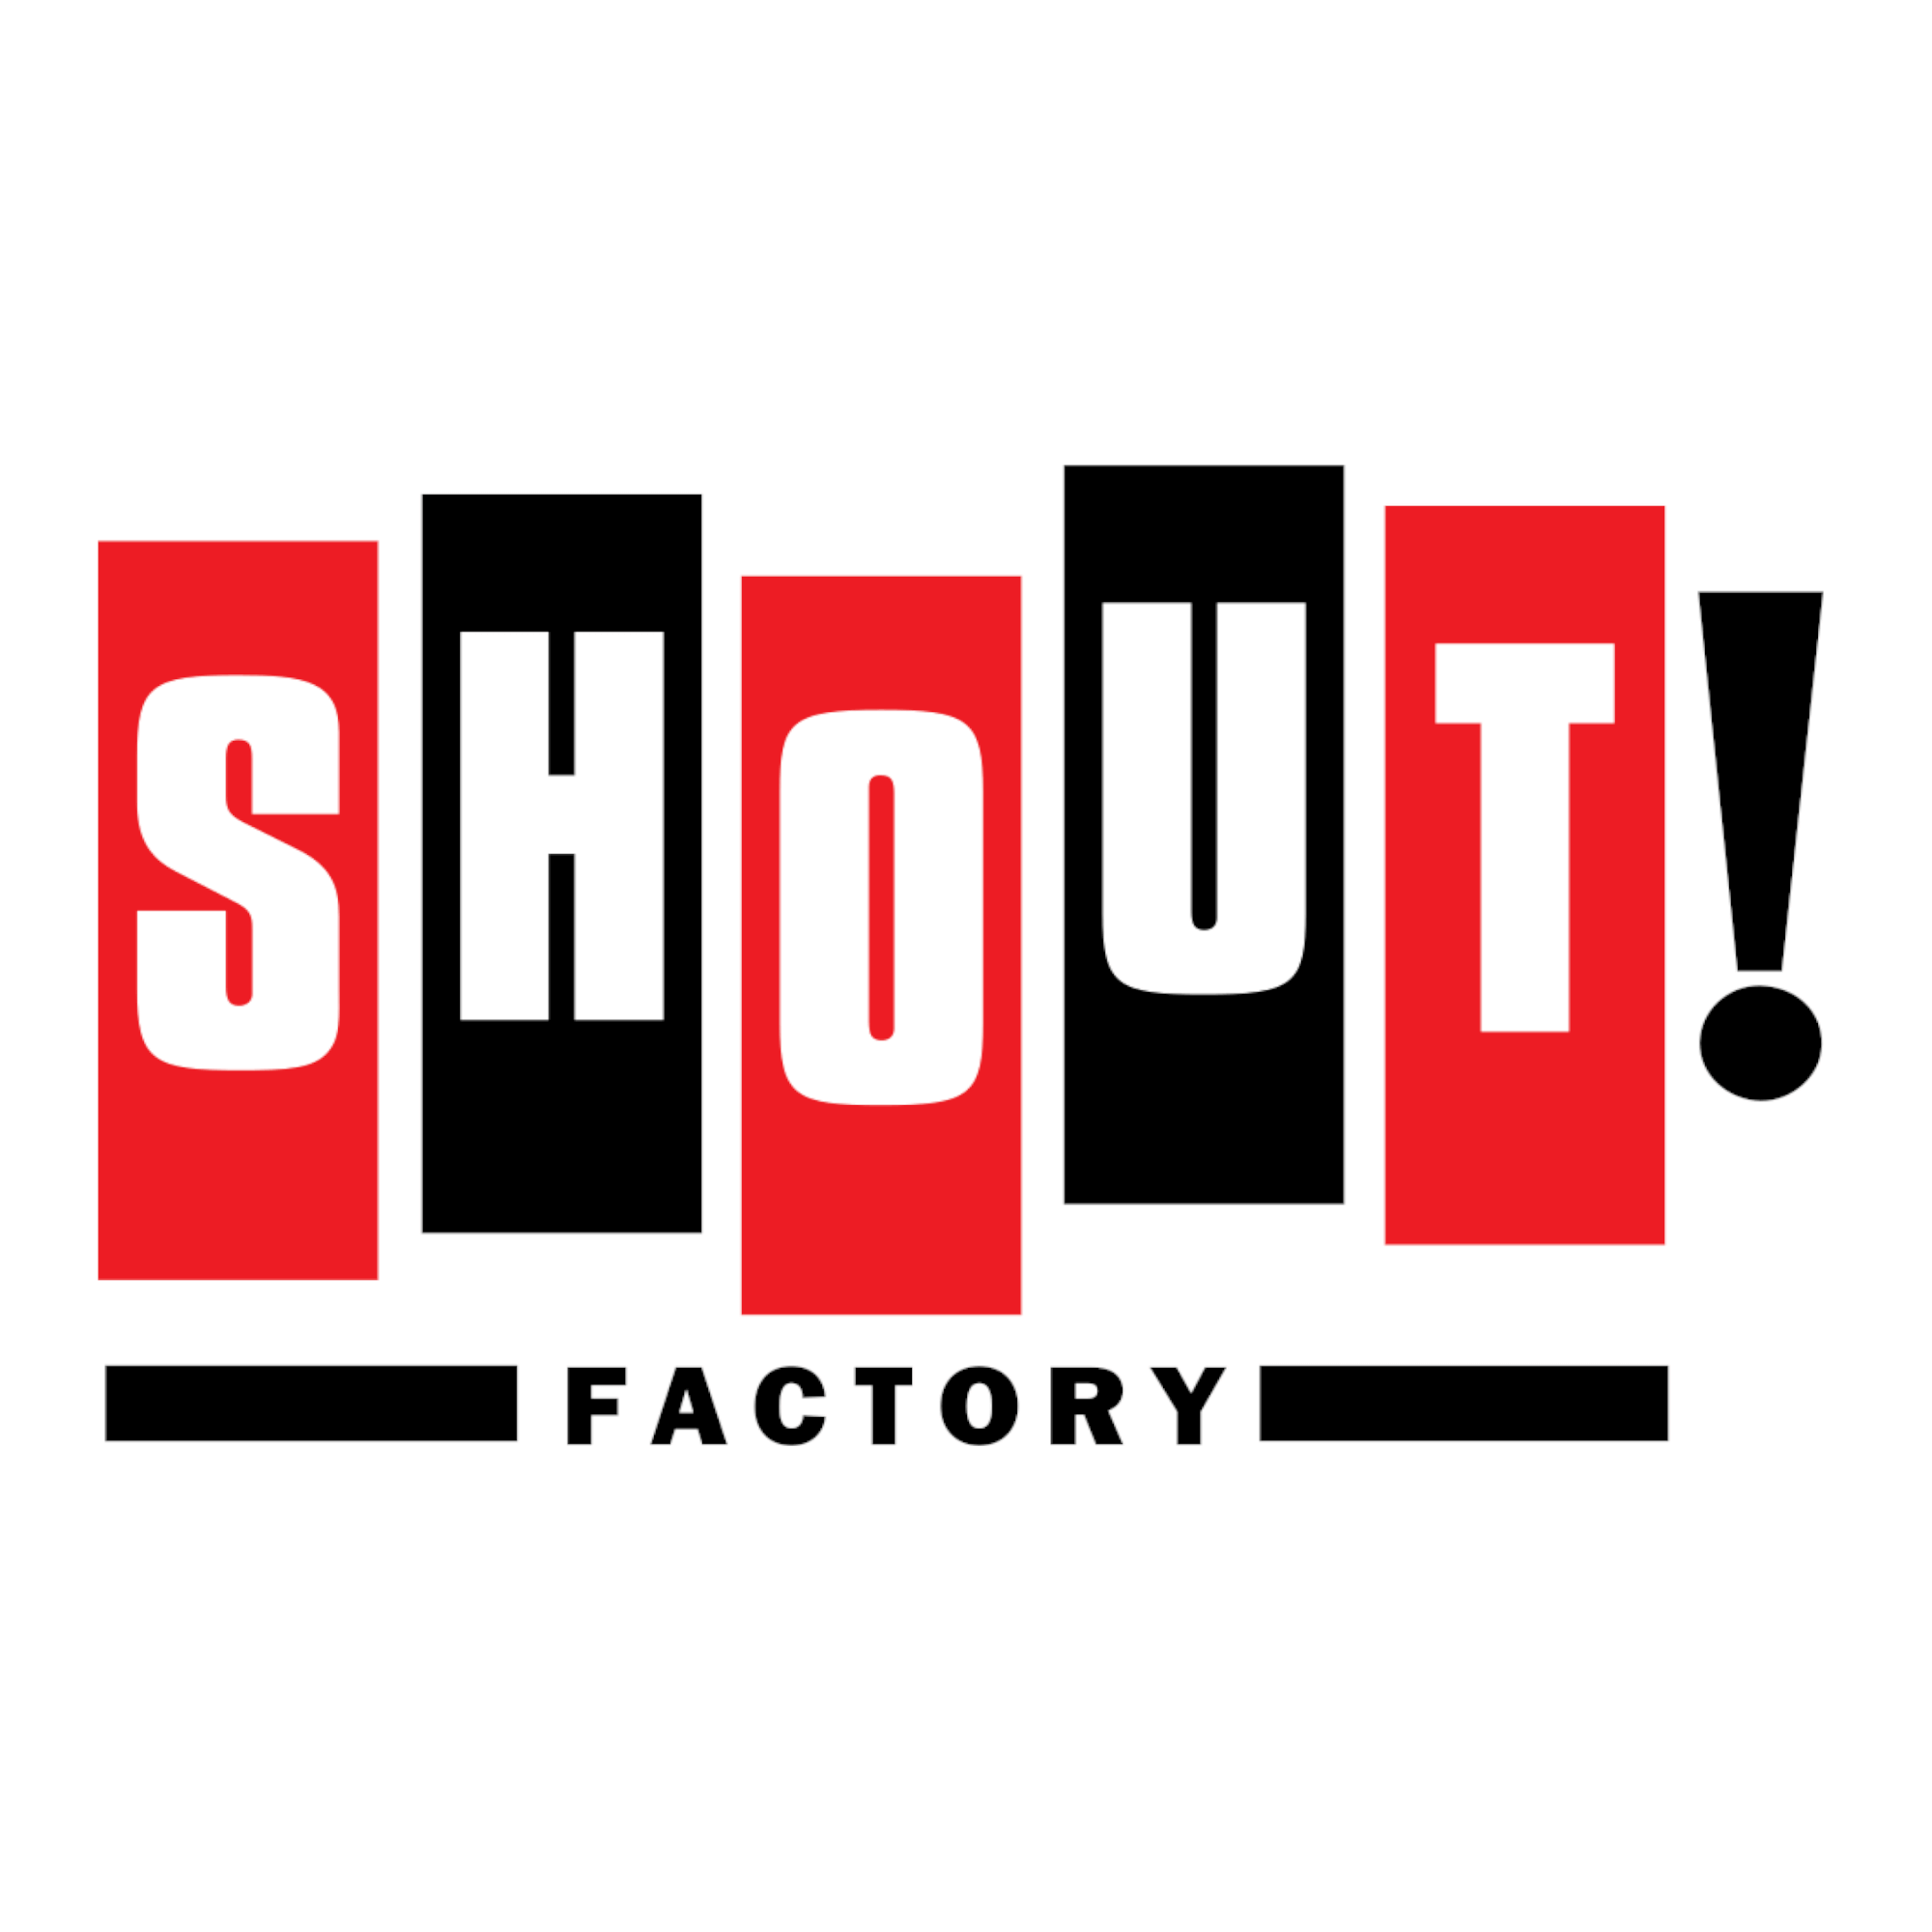 SHOUT! Factory